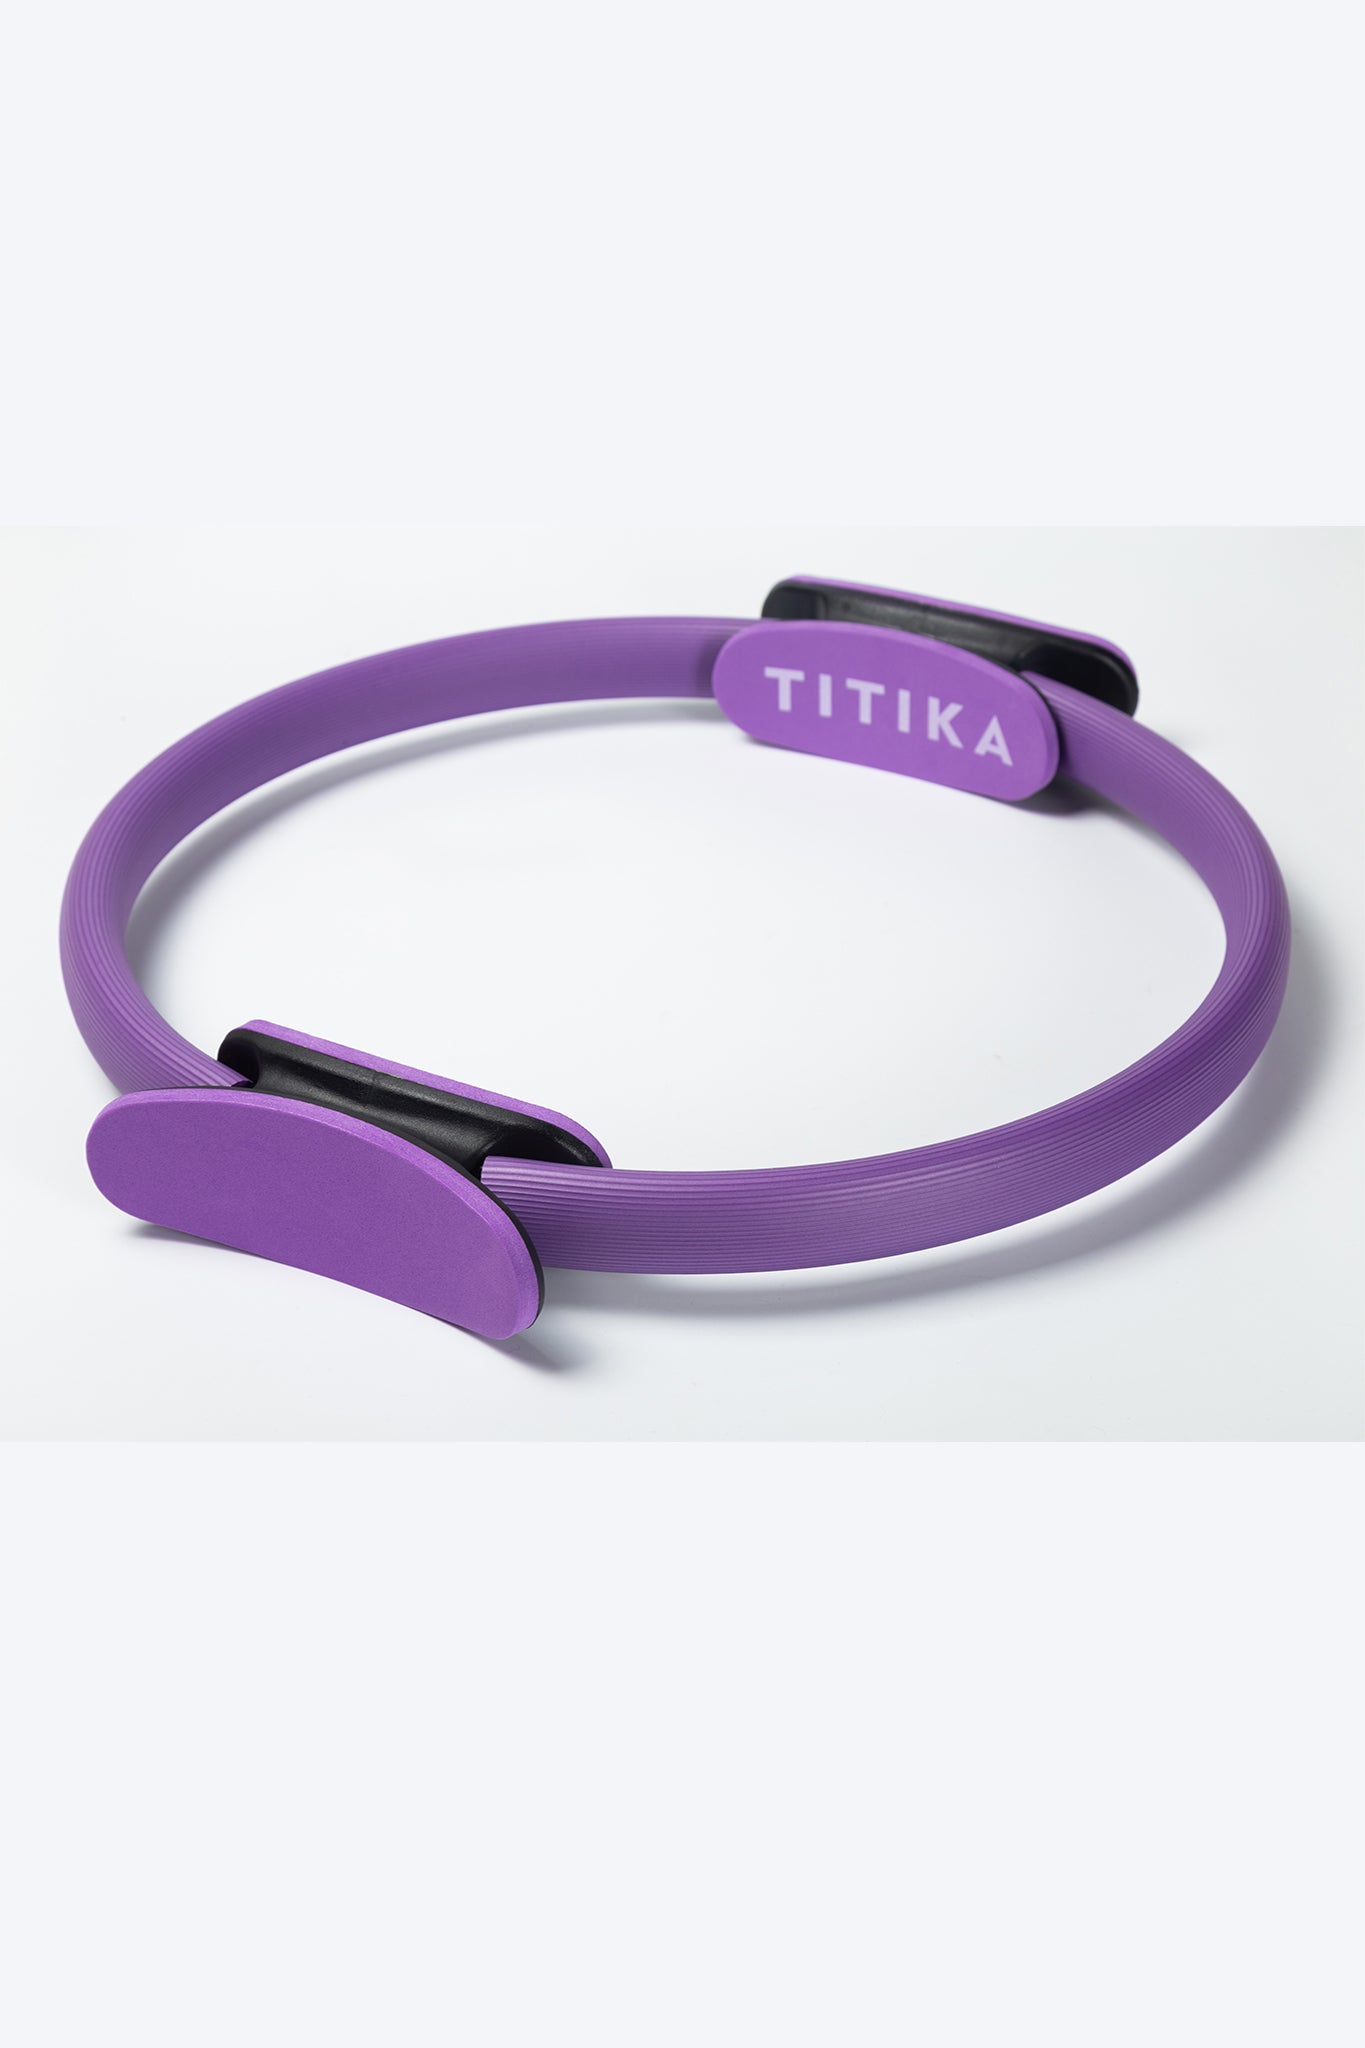 TITIKA Pilates Ring